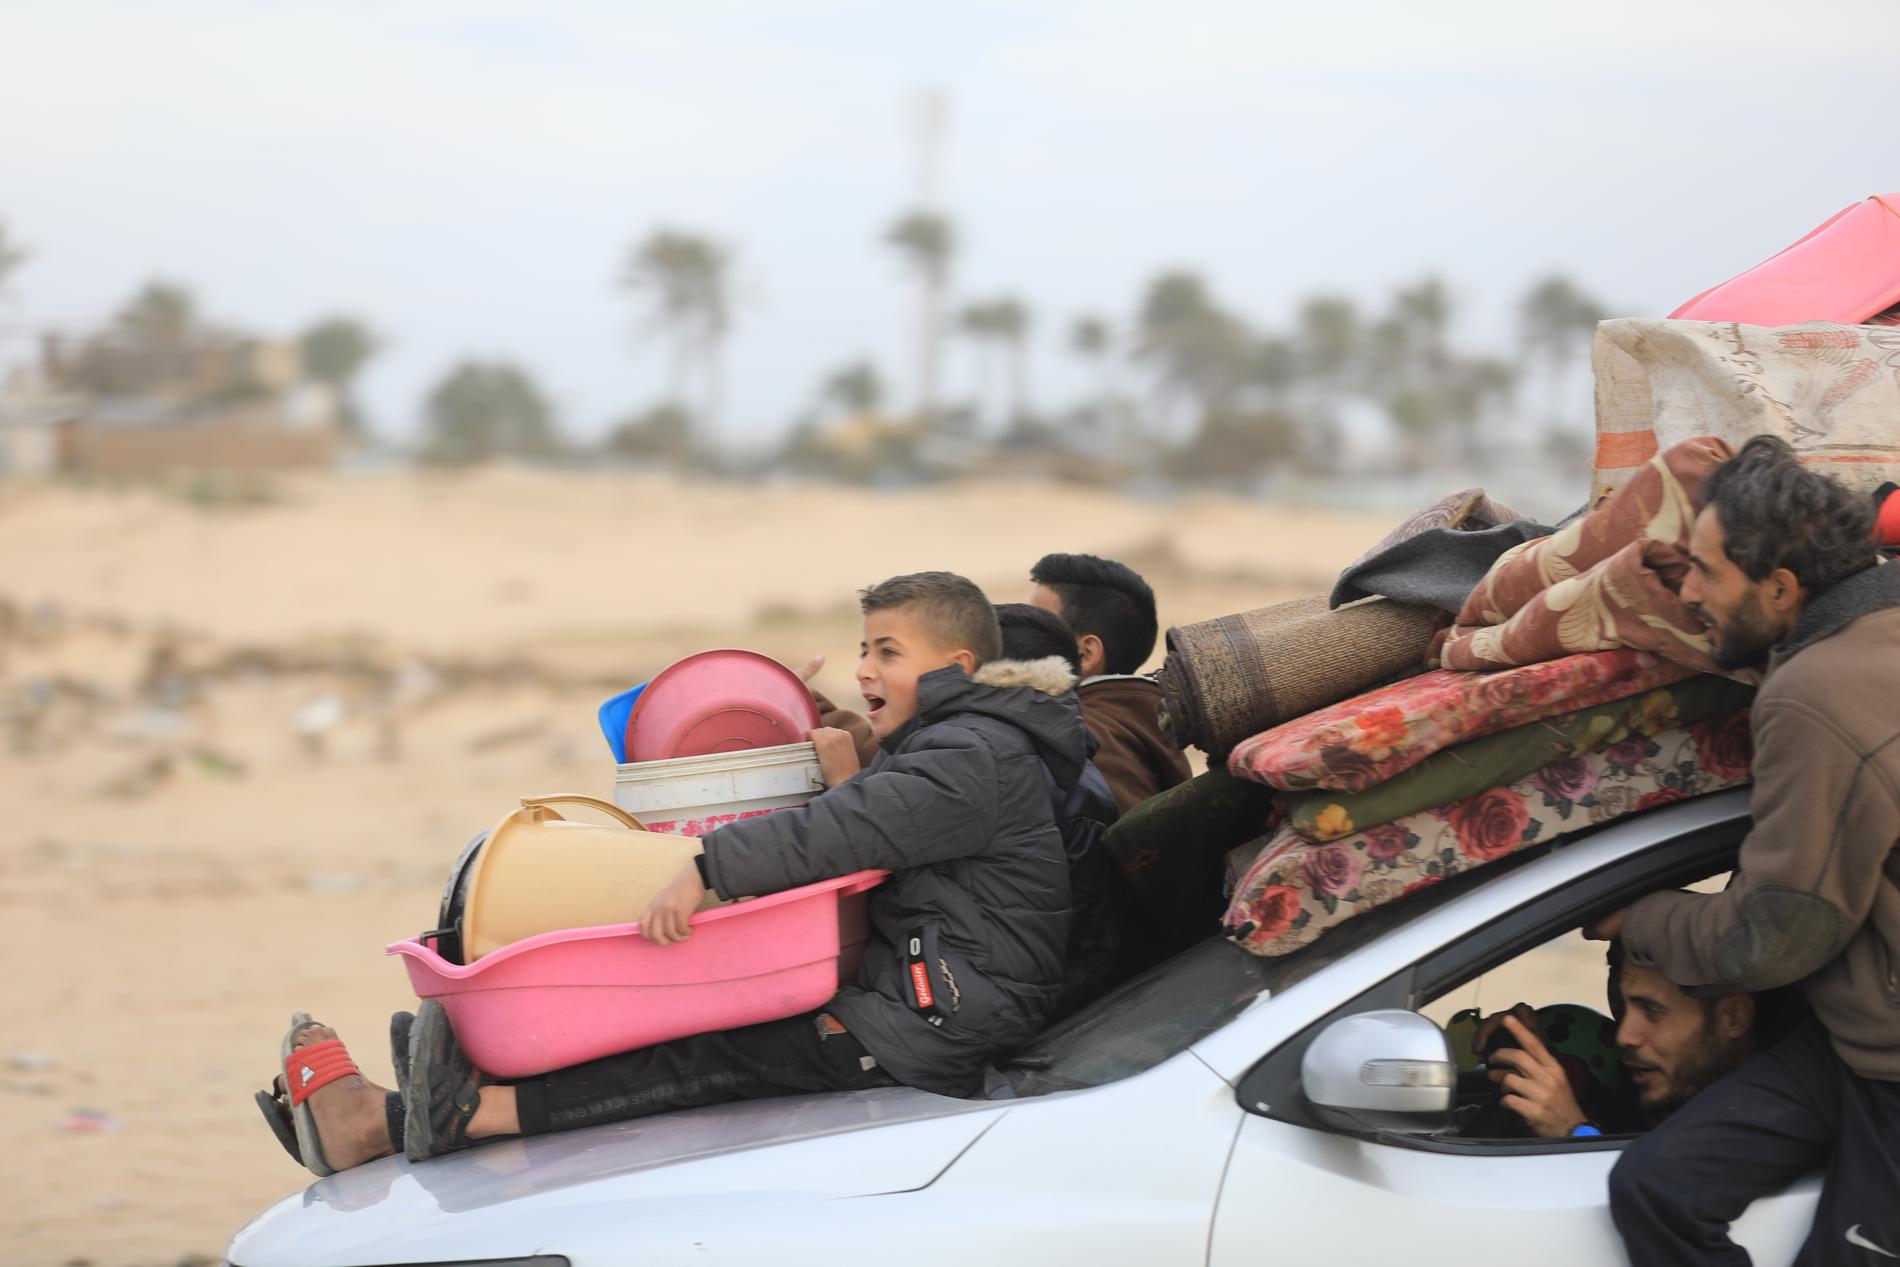 Hamish Young, katastrofsamordnare på Unicef, beskriver att de som har resurser flyr från Rafah, men att de sköraste blir kvar och därmed löper störst risk vid en markoffensiv. 